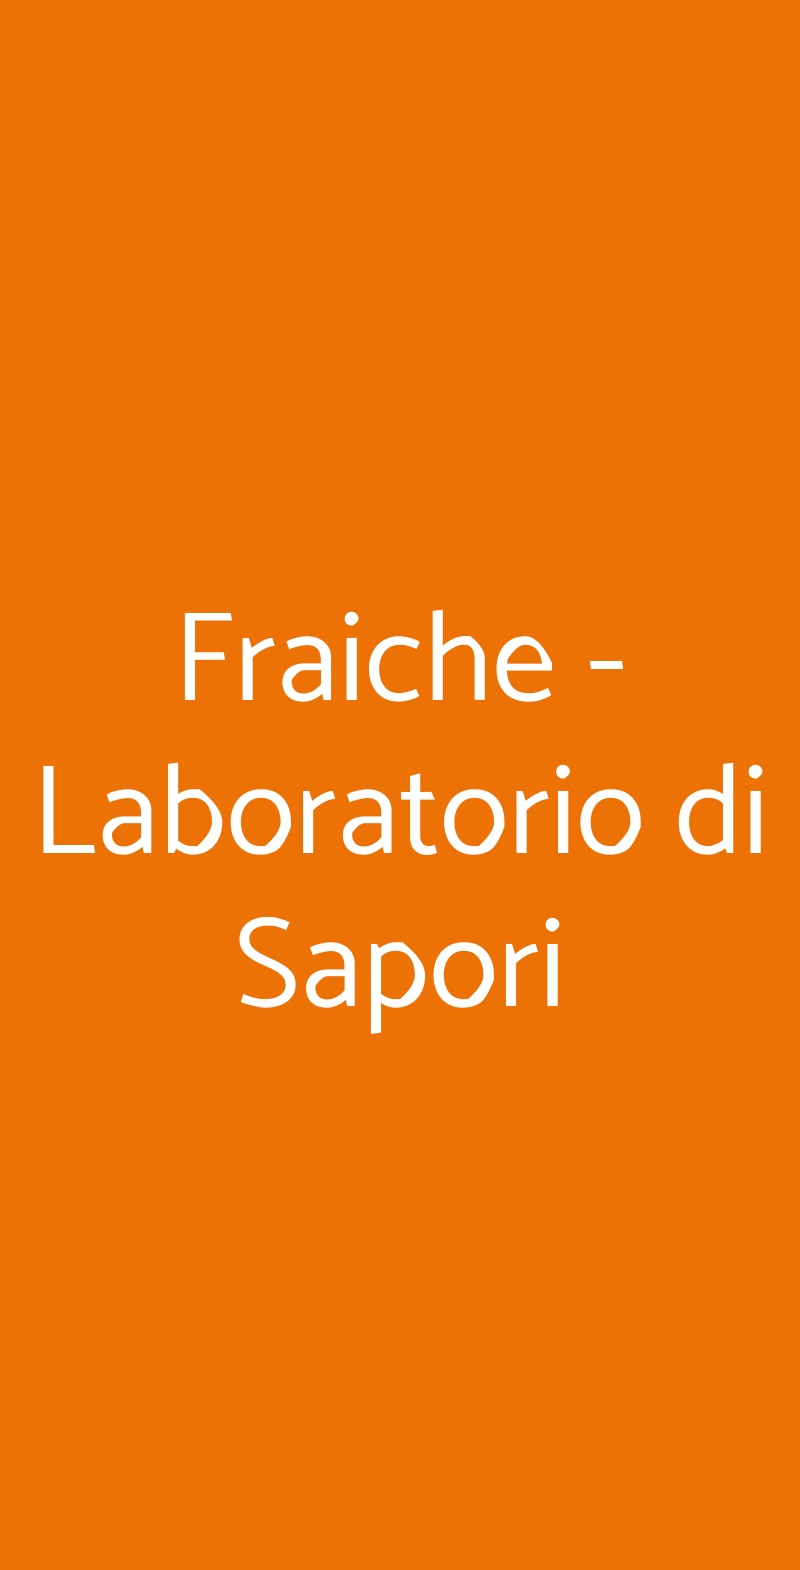 Fraiche - Laboratorio di Sapori Roma menù 1 pagina